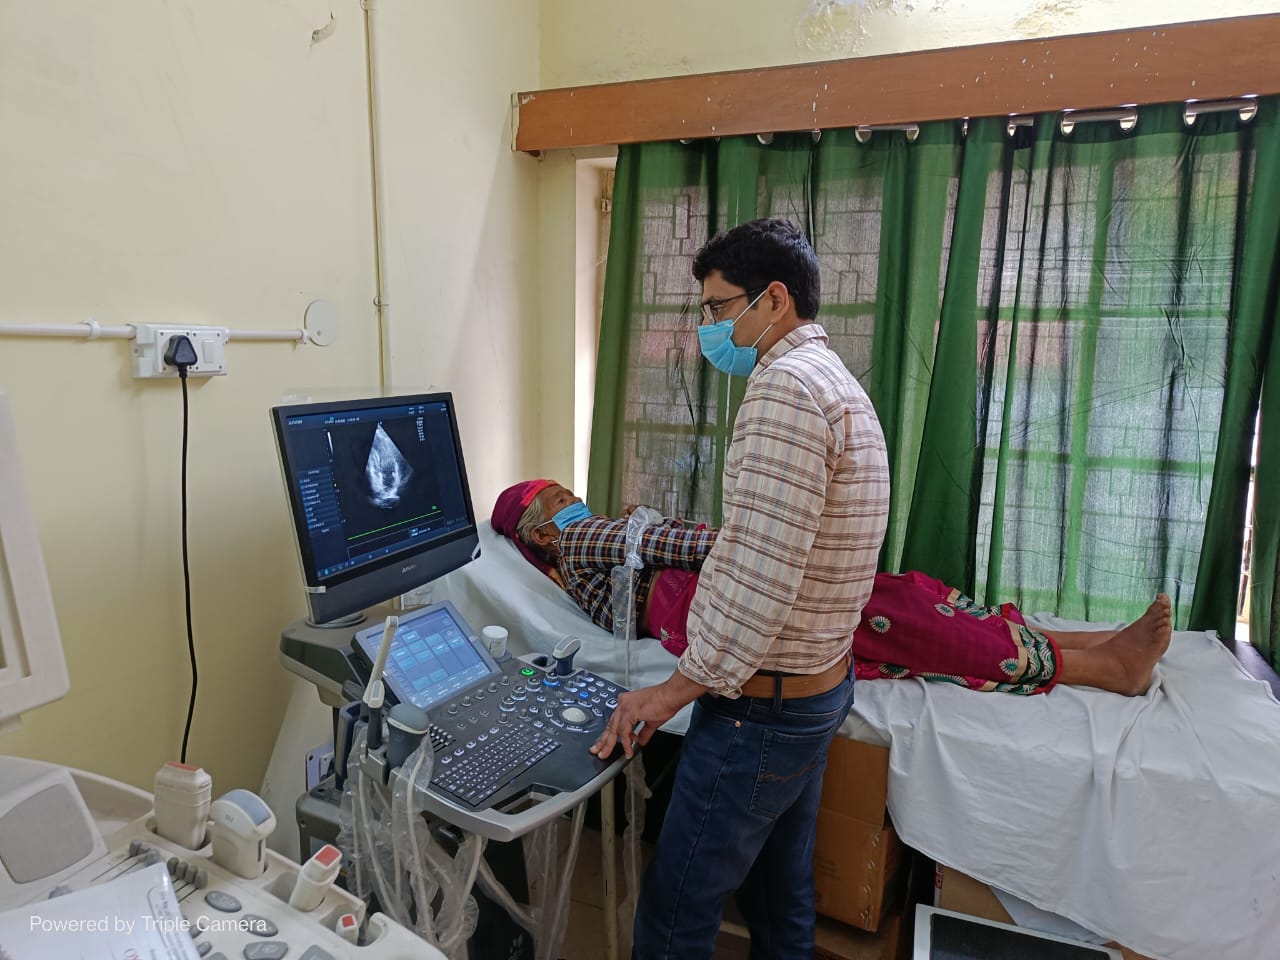 बेस अस्पताल श्रीनगर में 30 मई को लगेगा नि:शुल्क हृदय जांच शिविर